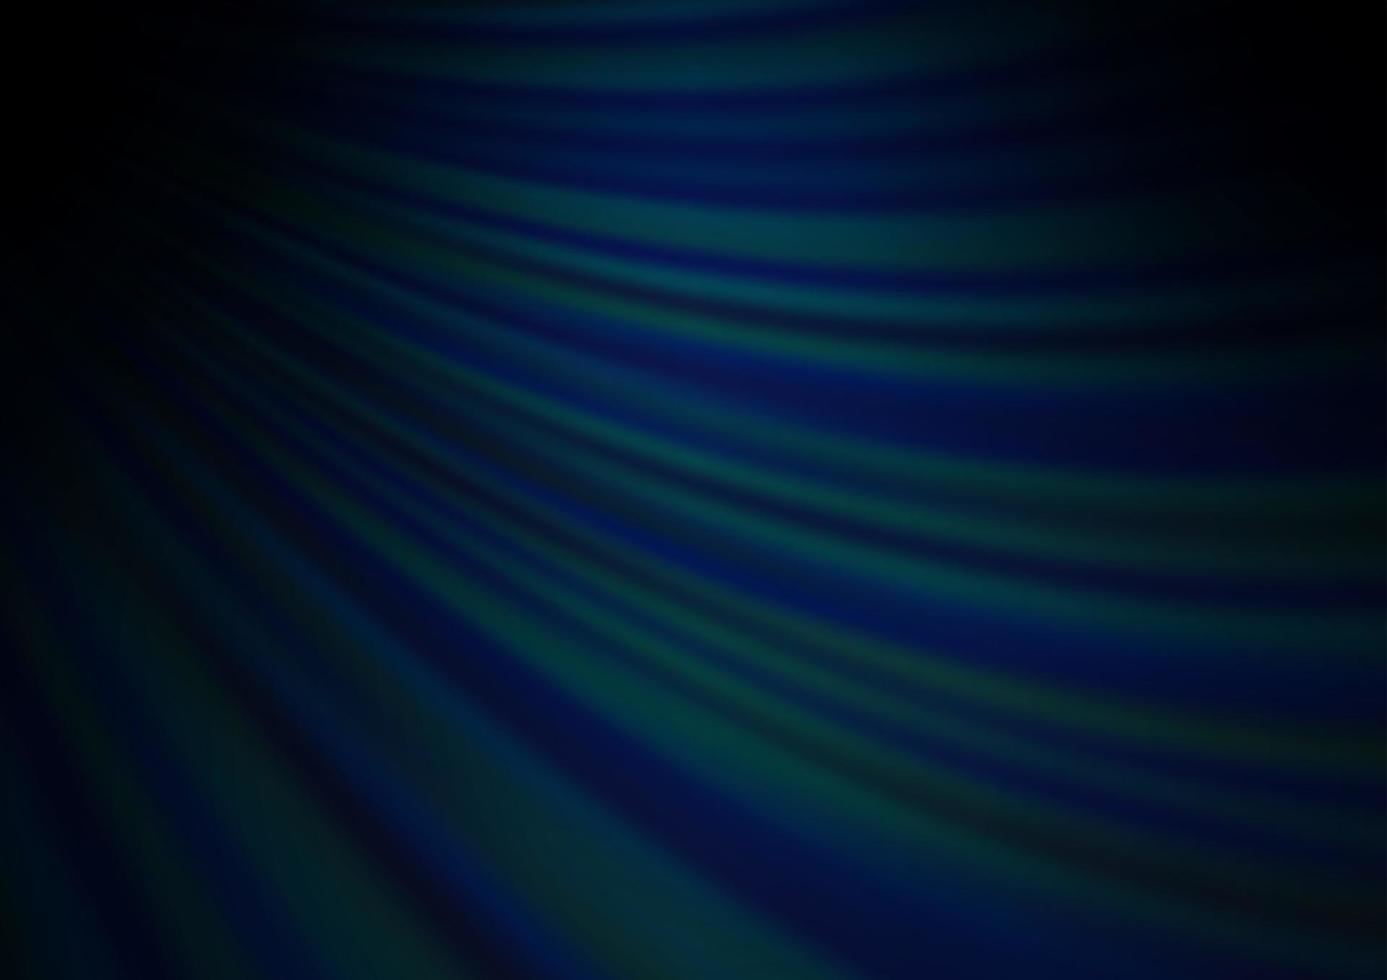 padrão de vetor azul escuro com formas líquidas.